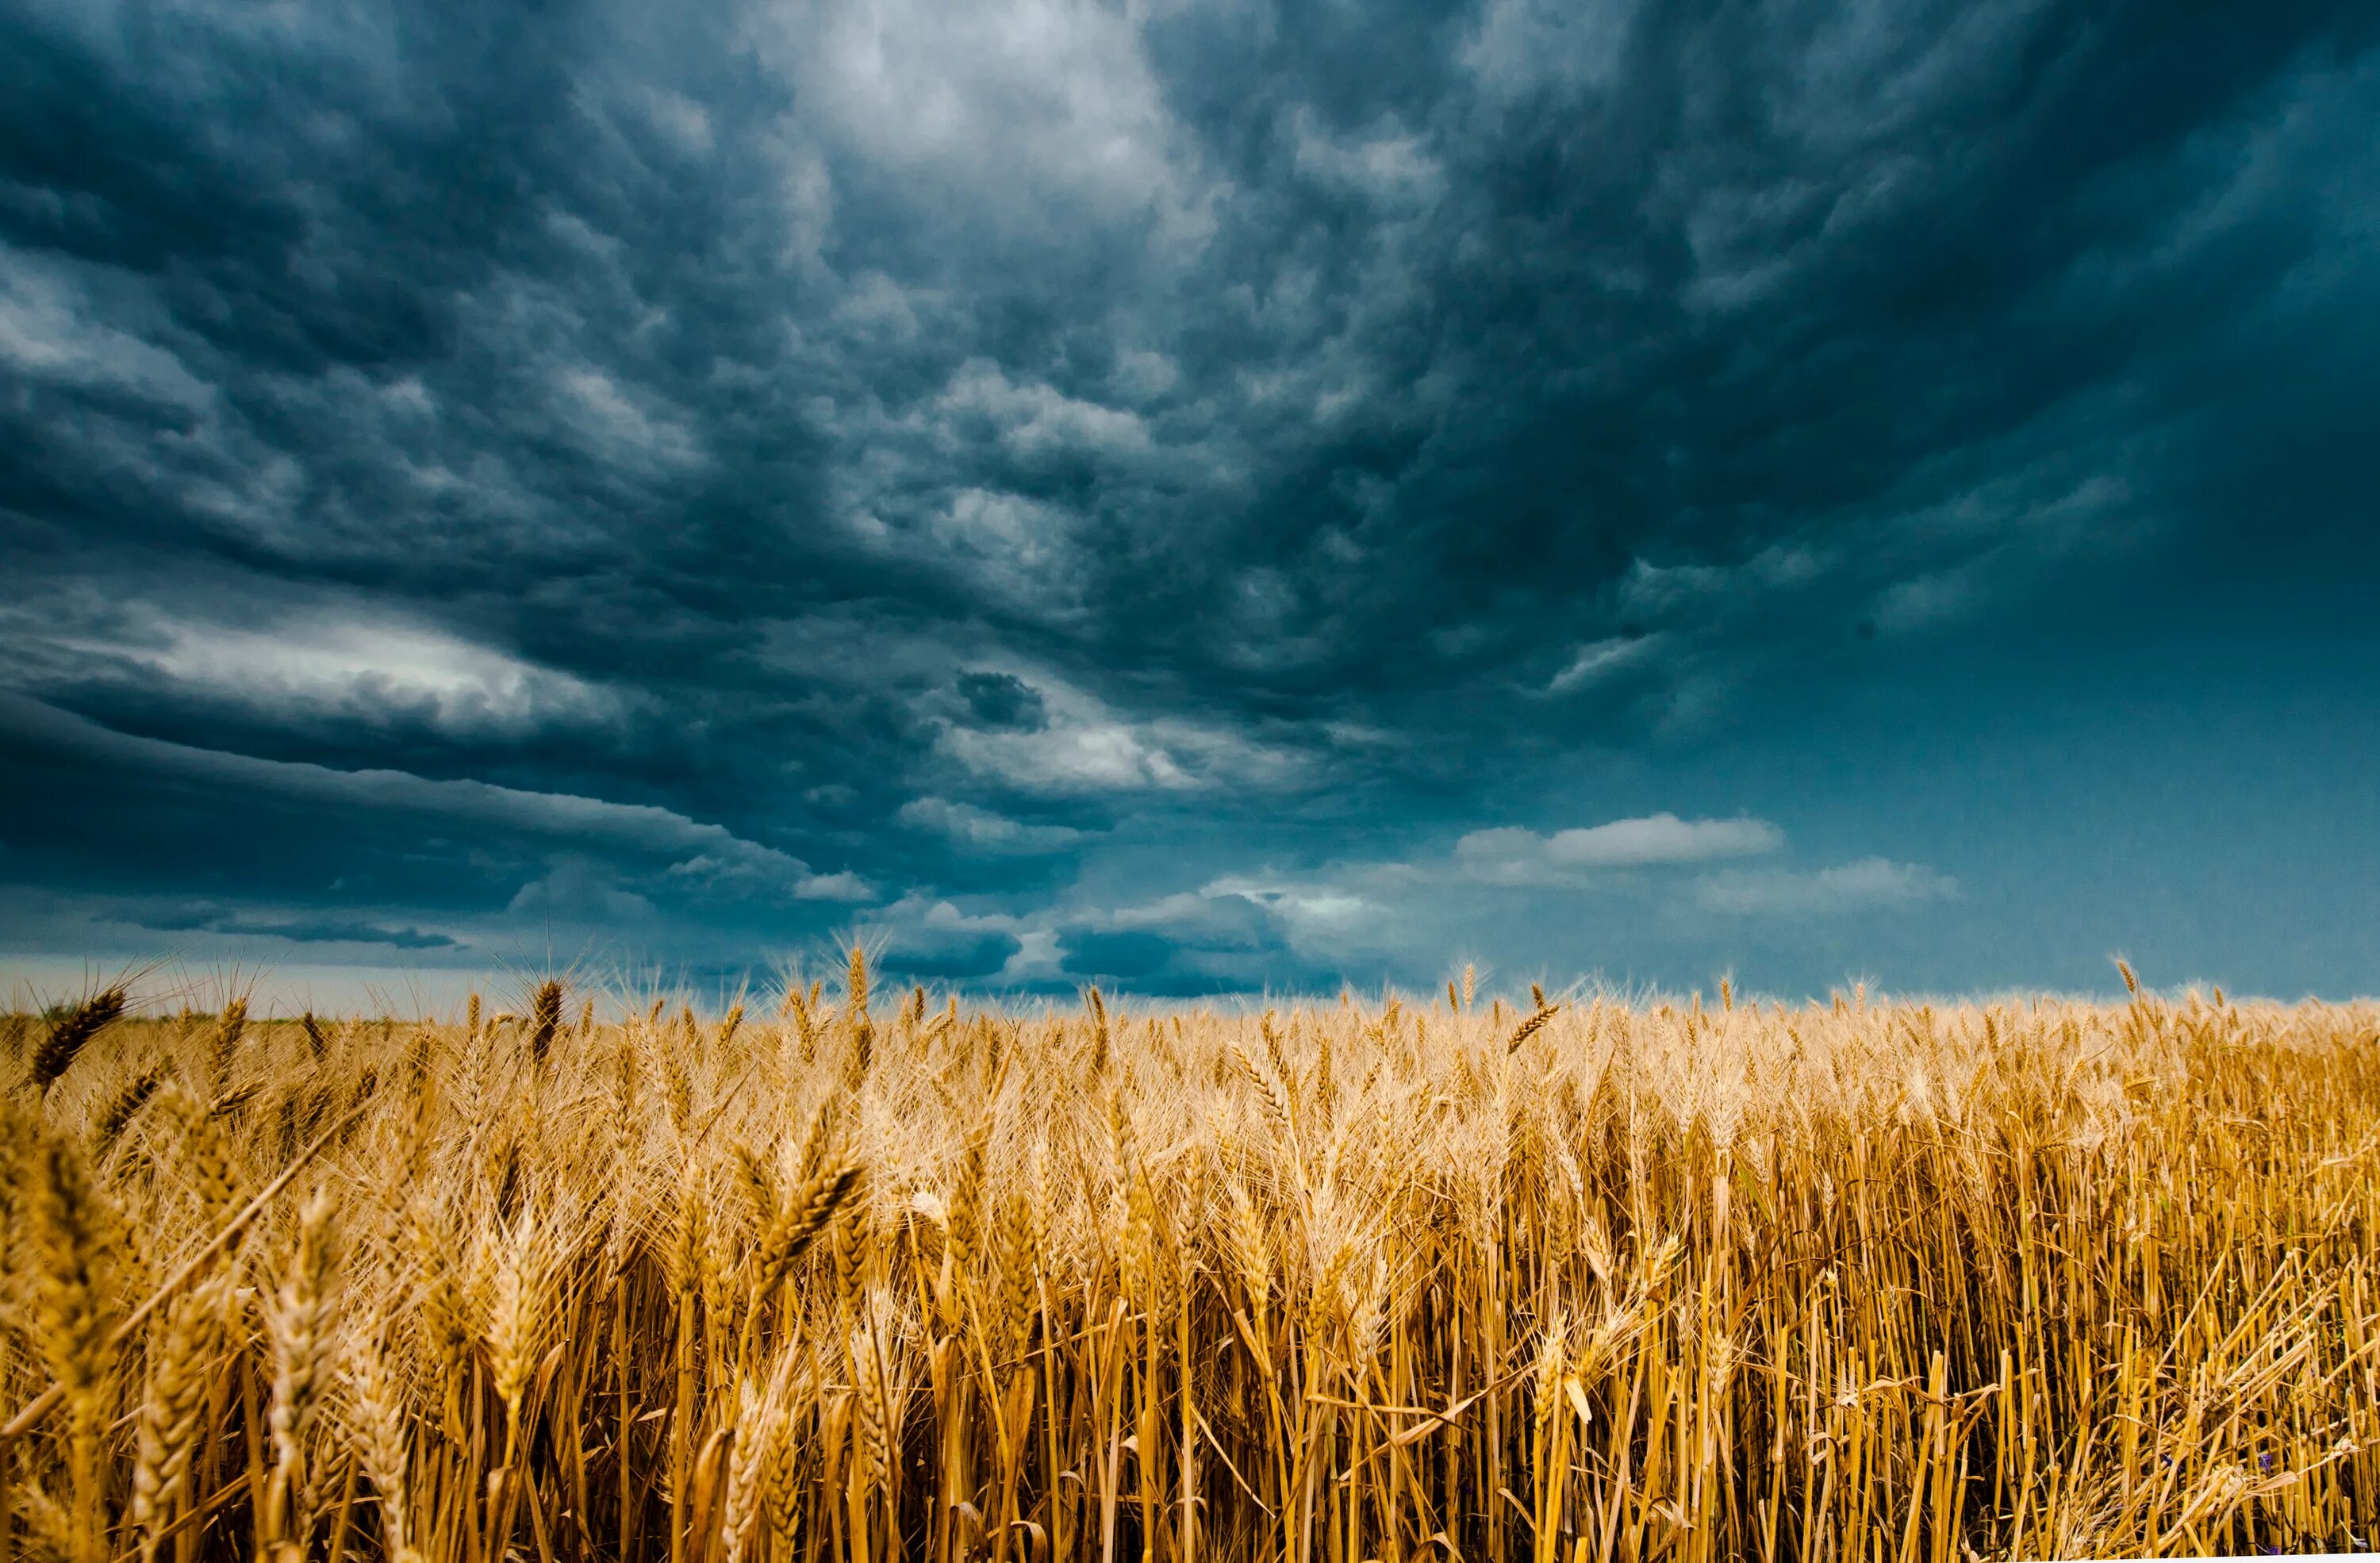 Поле пшеницы. В поле. Небо и поле пшеницы. Пшеничное поле перед грозой. Жит ва